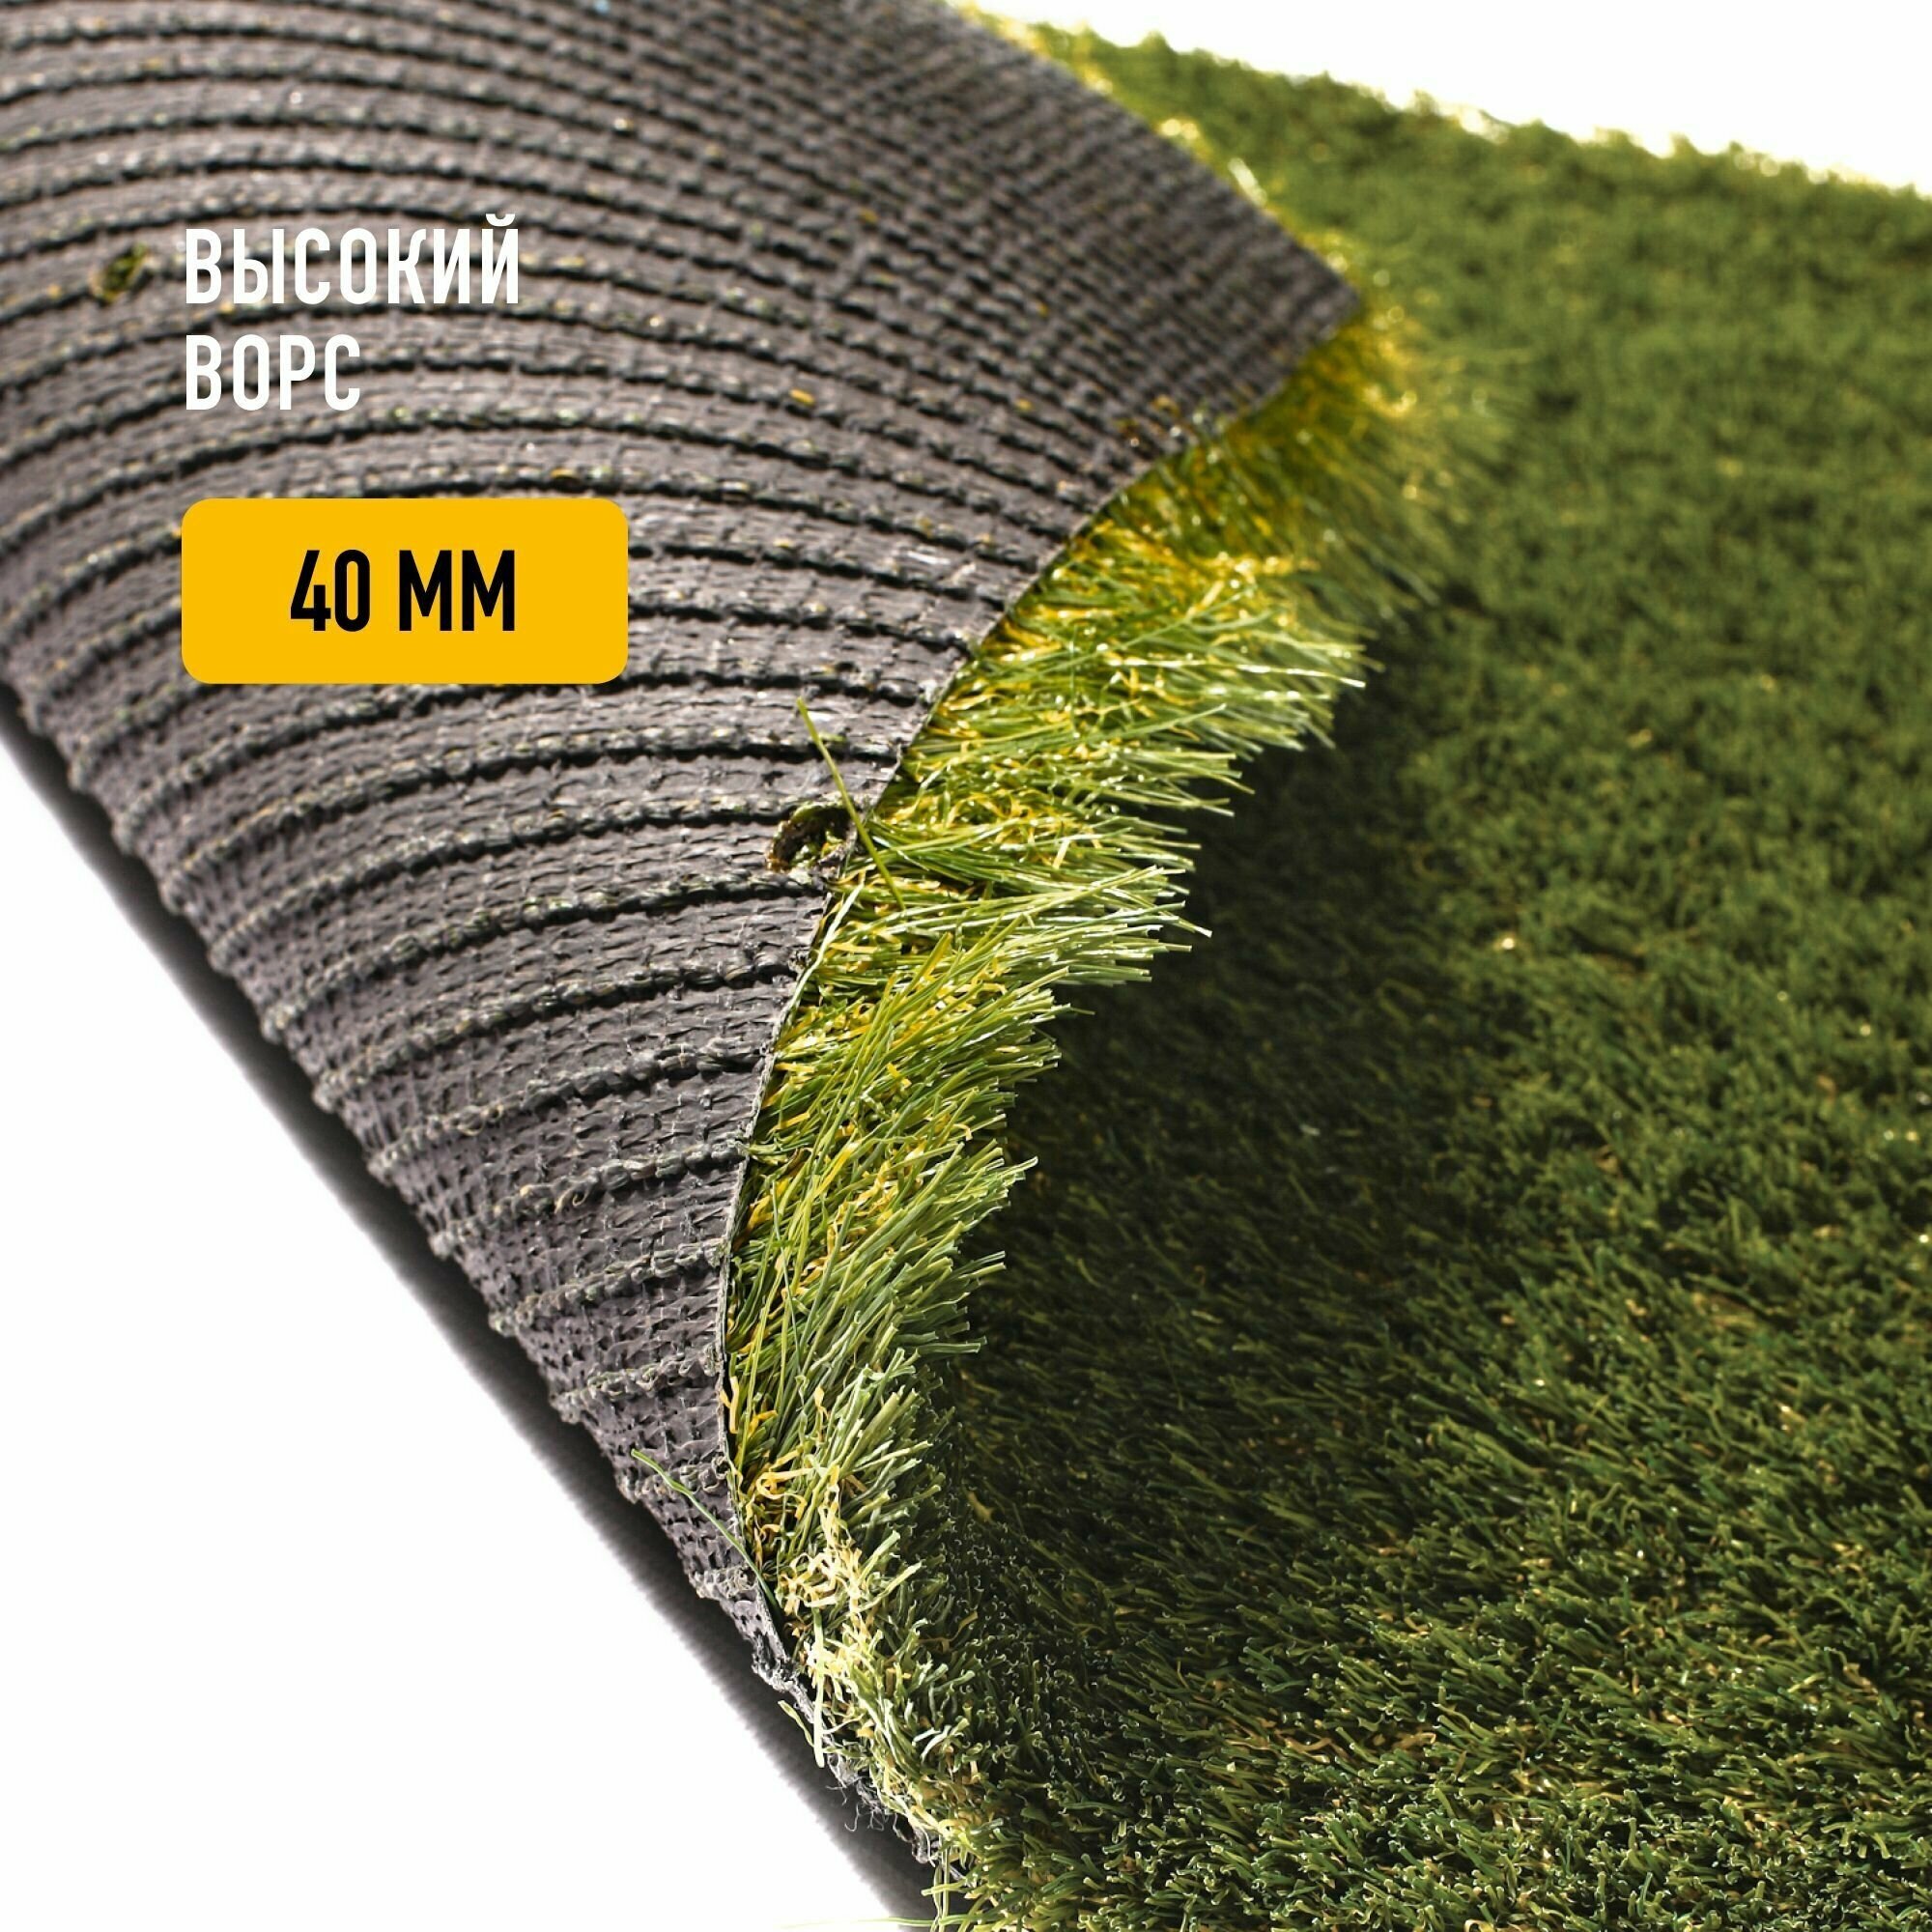 Искусственный газон 2х10 м в рулоне Premium Grass Elite 40 Green Bicolor, ворс 40 мм. Искусственная трава. 4844726-2х10 - фотография № 2